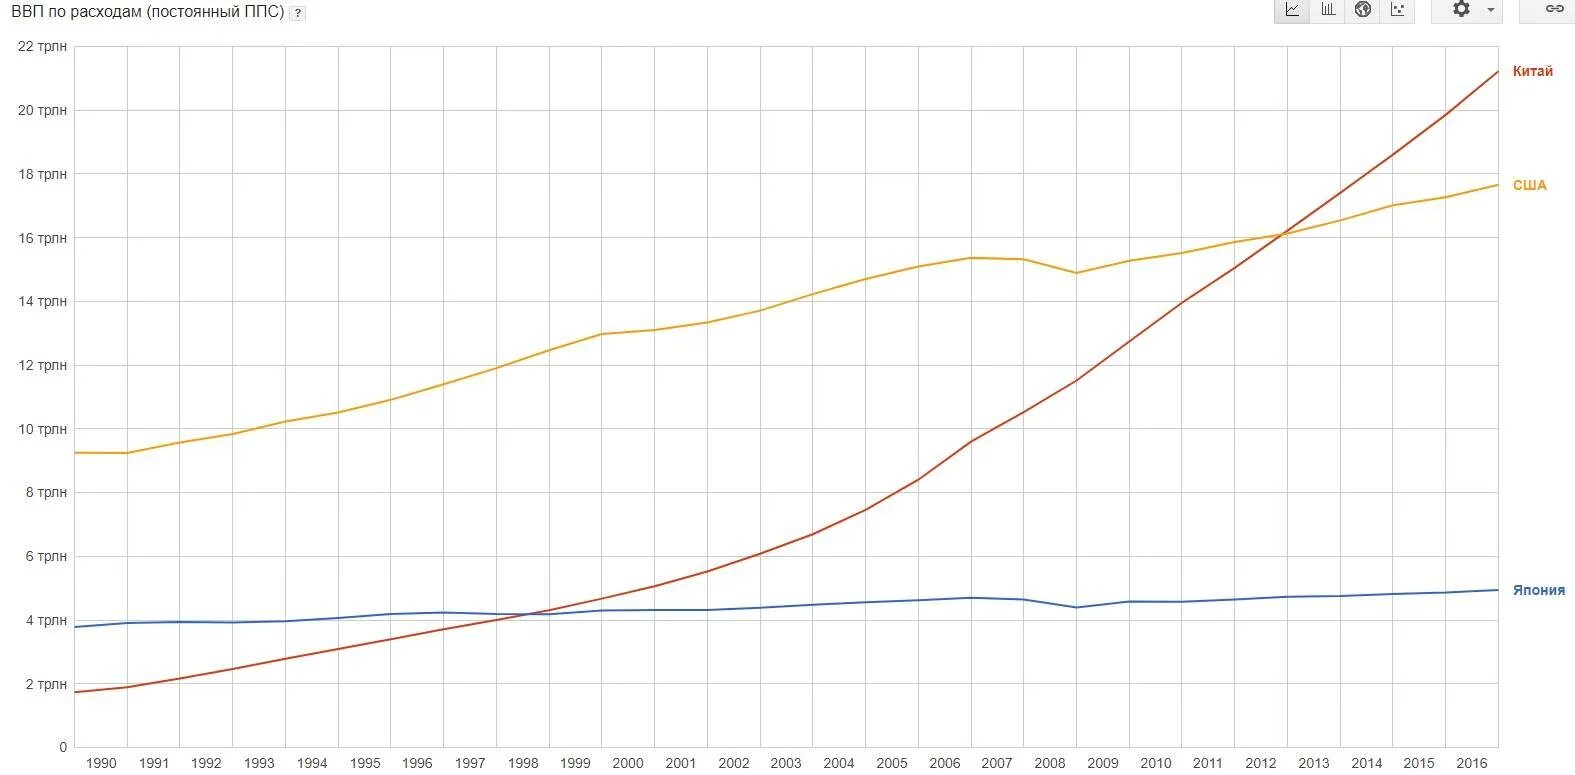 Россия ввп по ппс на душу населения. ВВП Китая по ППС на душу населения по годам. ВВП по ППС на душу населения США по годам. ВВП США И Китая по годам по ППС. ВВП Китая 2021 год.